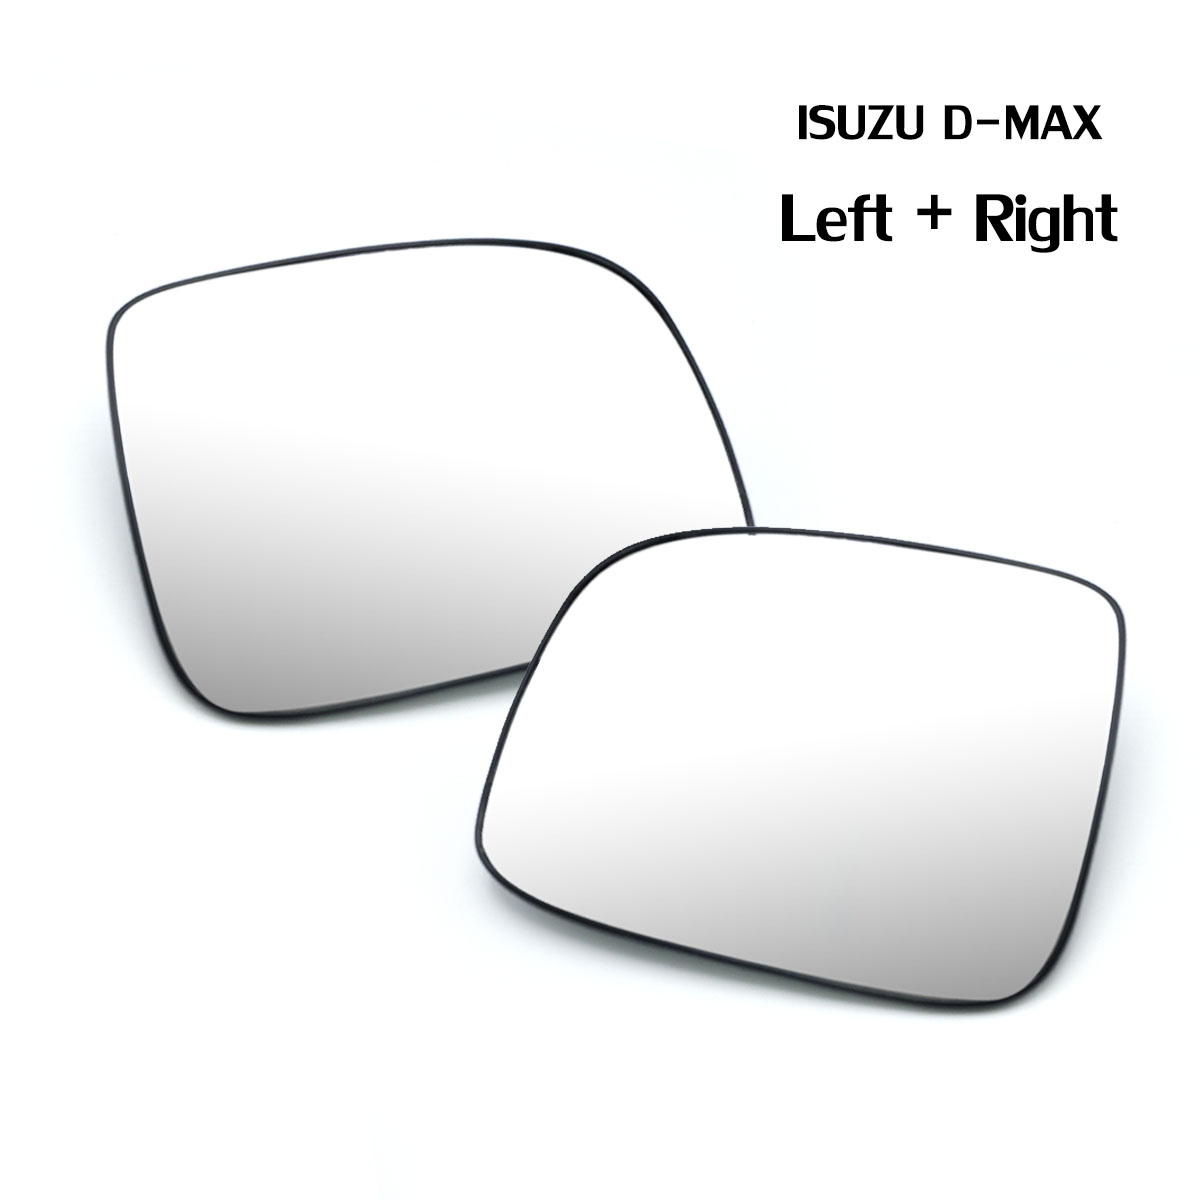 เนื้อเลนส์กระจก ข้าง ขวา+ซ้าย ใส่ Isuzu D-Max Gold series RH+Lh Wing Side Door Mirror Glass Len D-Max Gold series Isuzu 2003-2011 มีบริการเก็บเงินปลายทาง